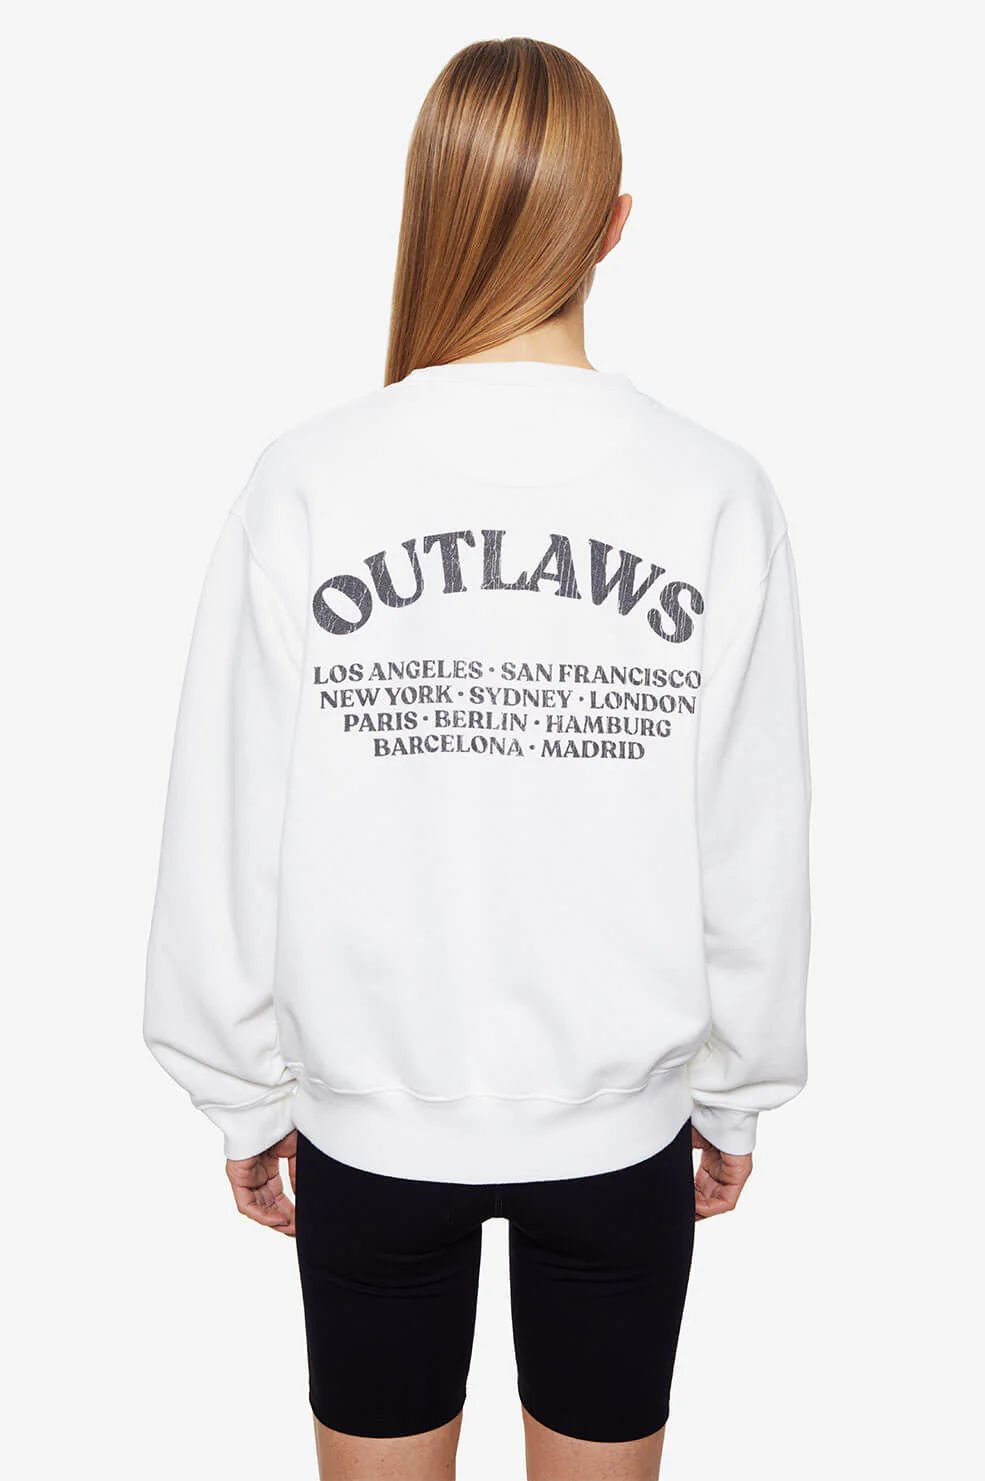 Ramona Sweatshirt Outlaw | Anine Bing